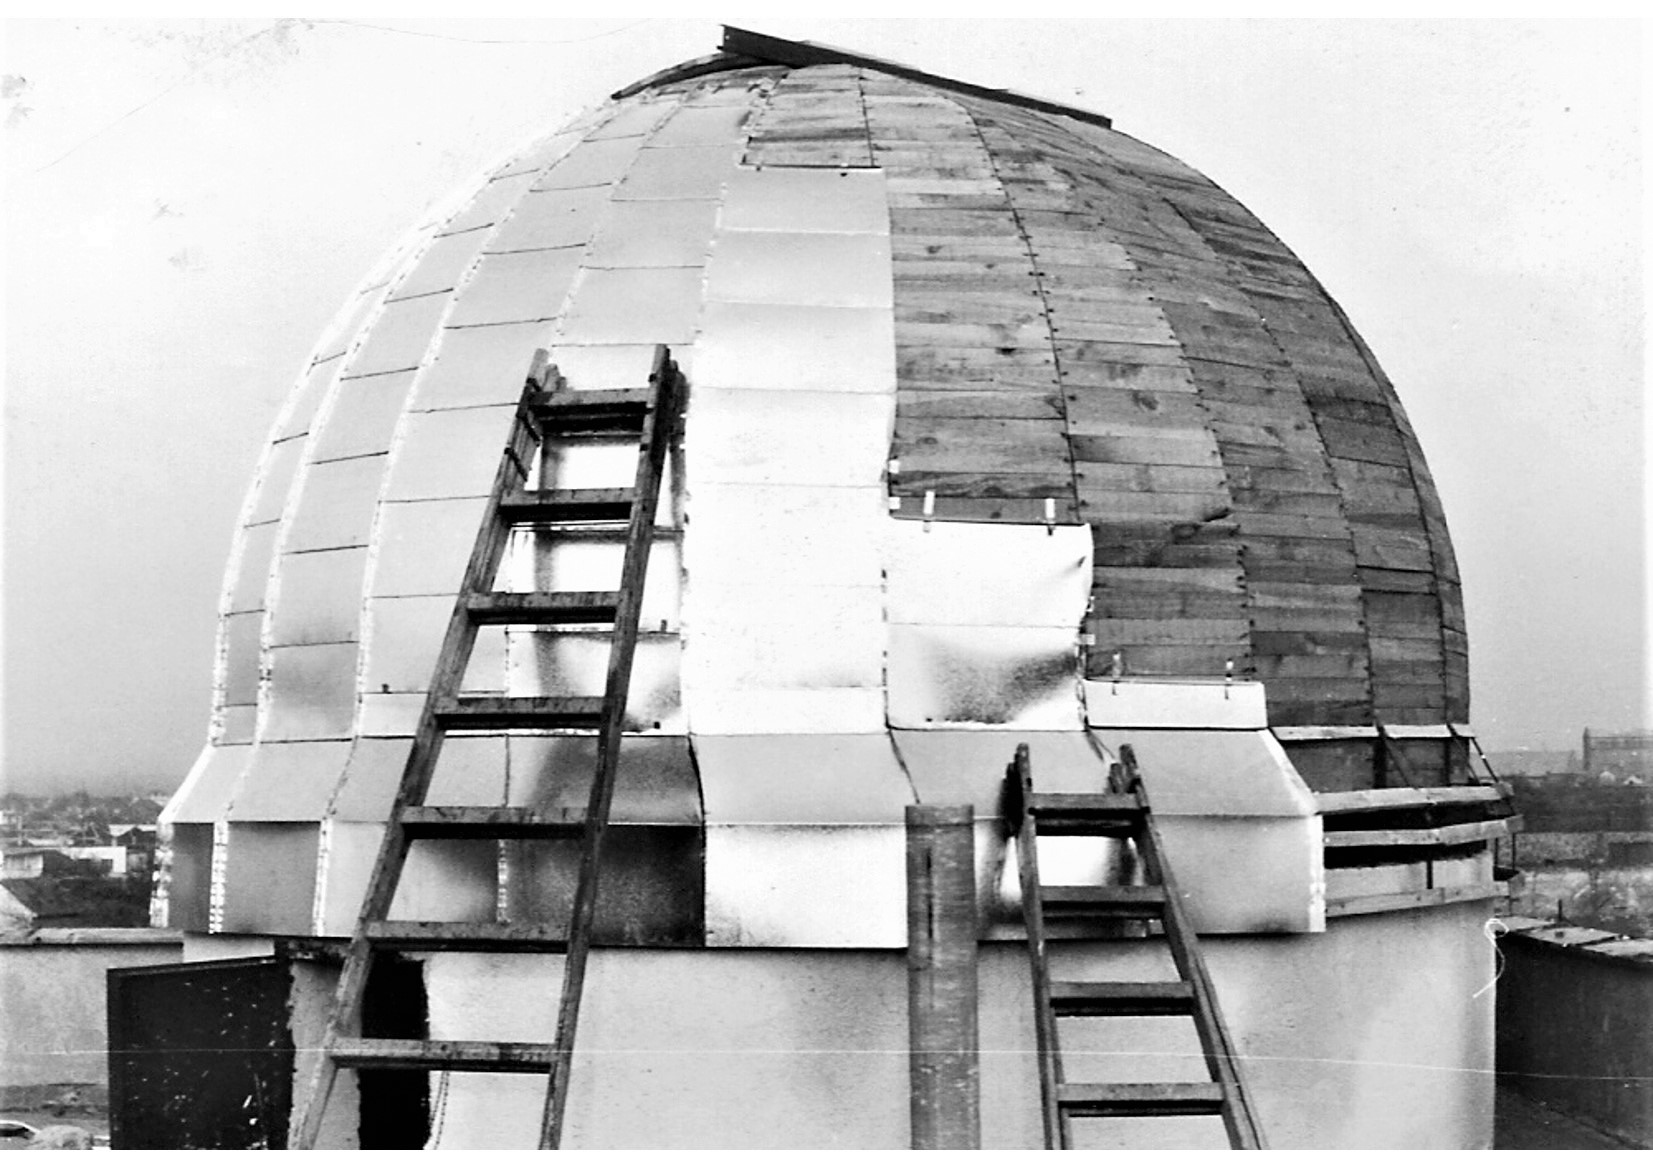 senecka-hvezdaren-ma-40-rokov-7.-oktobra-1982-bola-na-strechu-skoly-osadena-kupola-hvezdarne